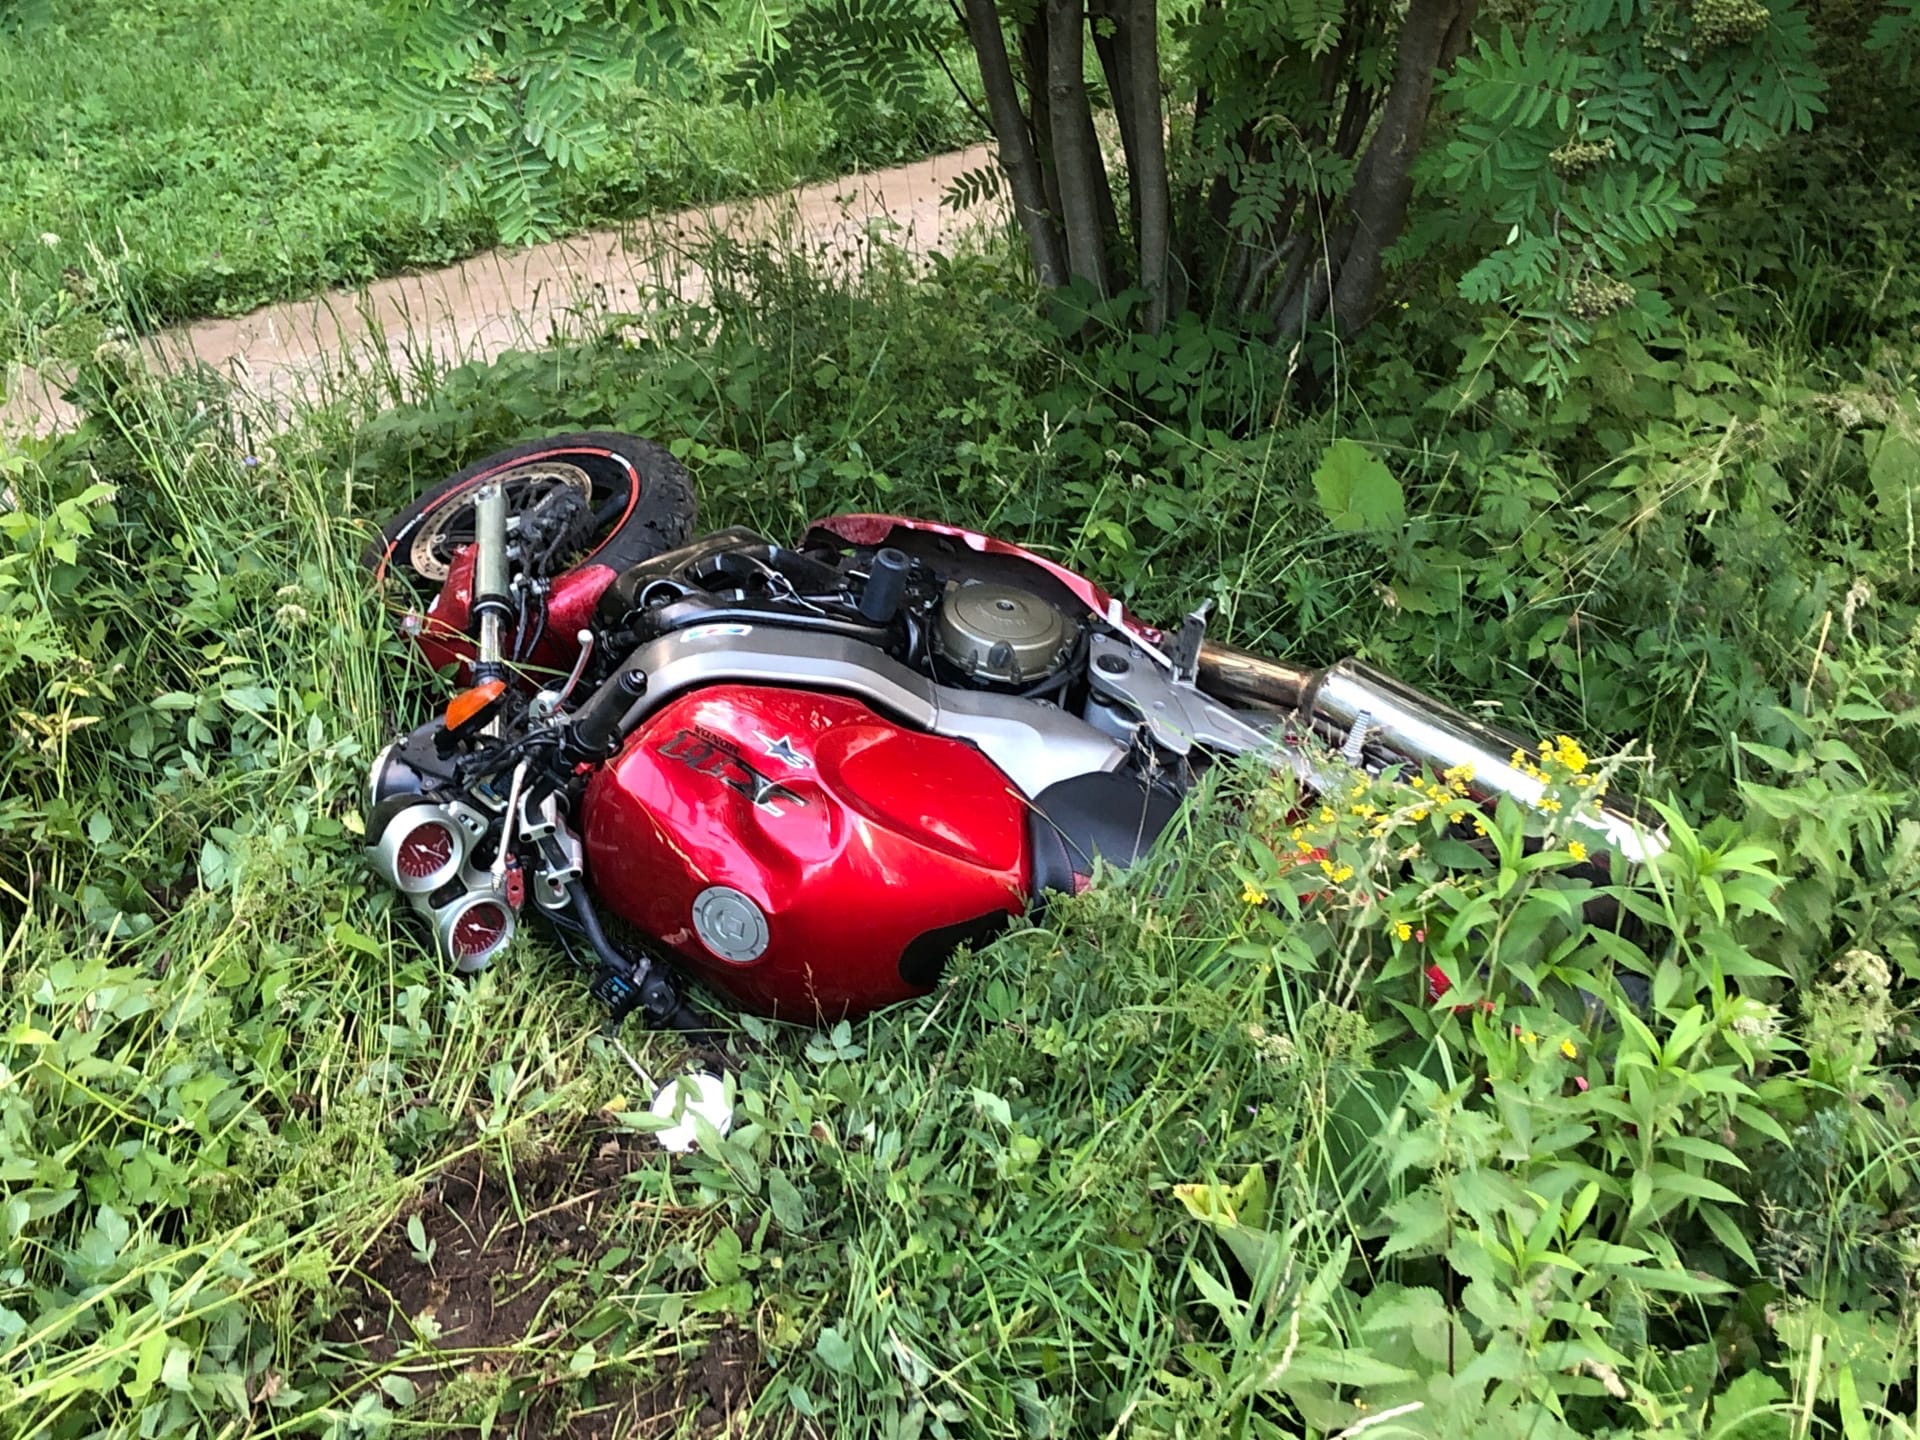 Мотоцикл насмерть сбил пешехода в Торжке - еще два человека пострадали. Фото 18+